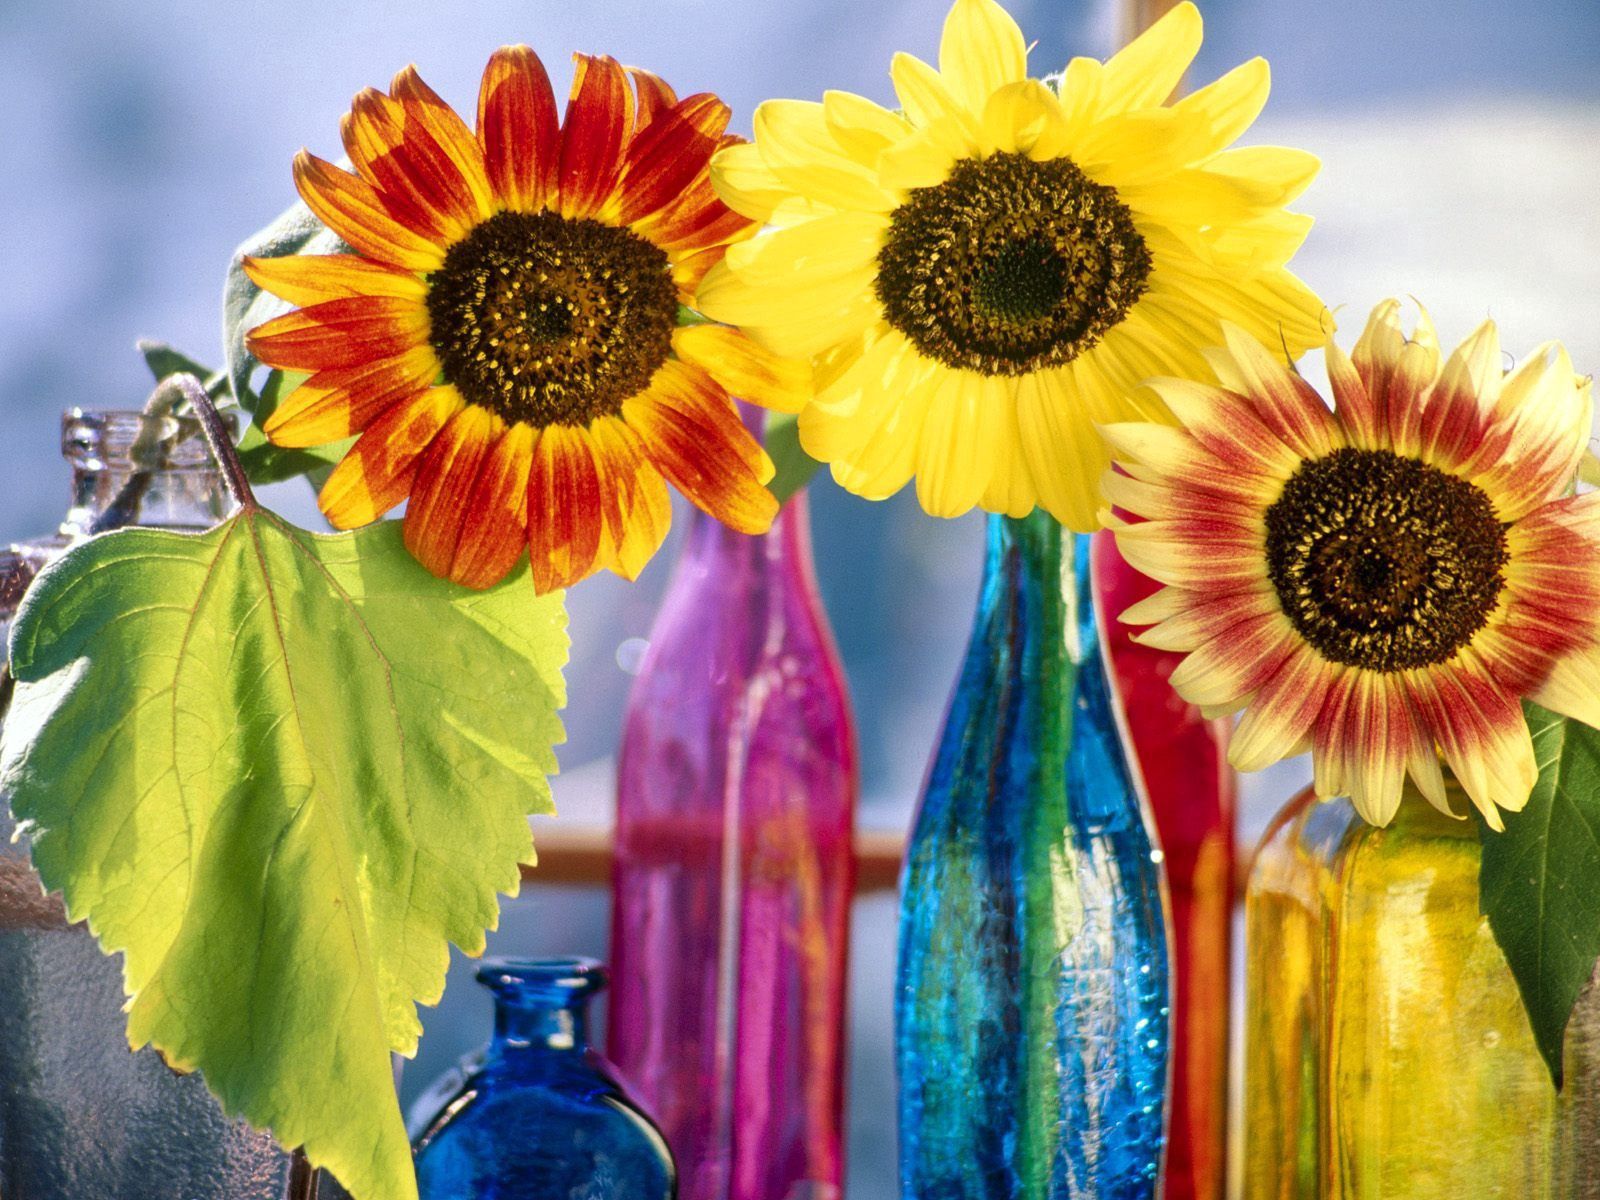 flowers, sunflowers, shine, light, bright, leaflet, bottle, bottles